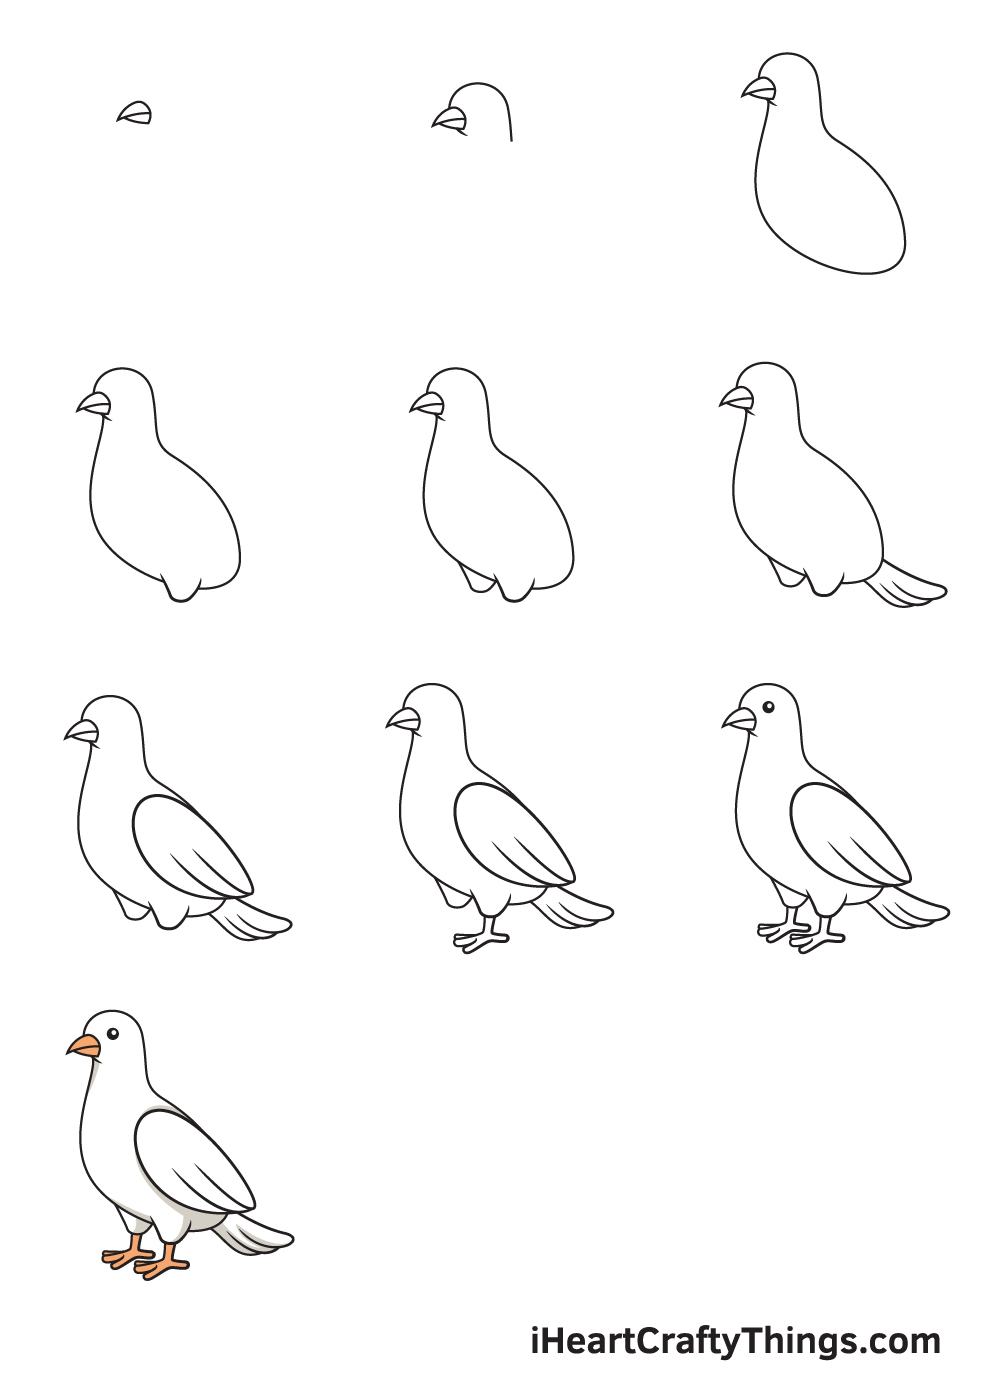 vẽ chim bồ câu trong 9 bước đơn giản